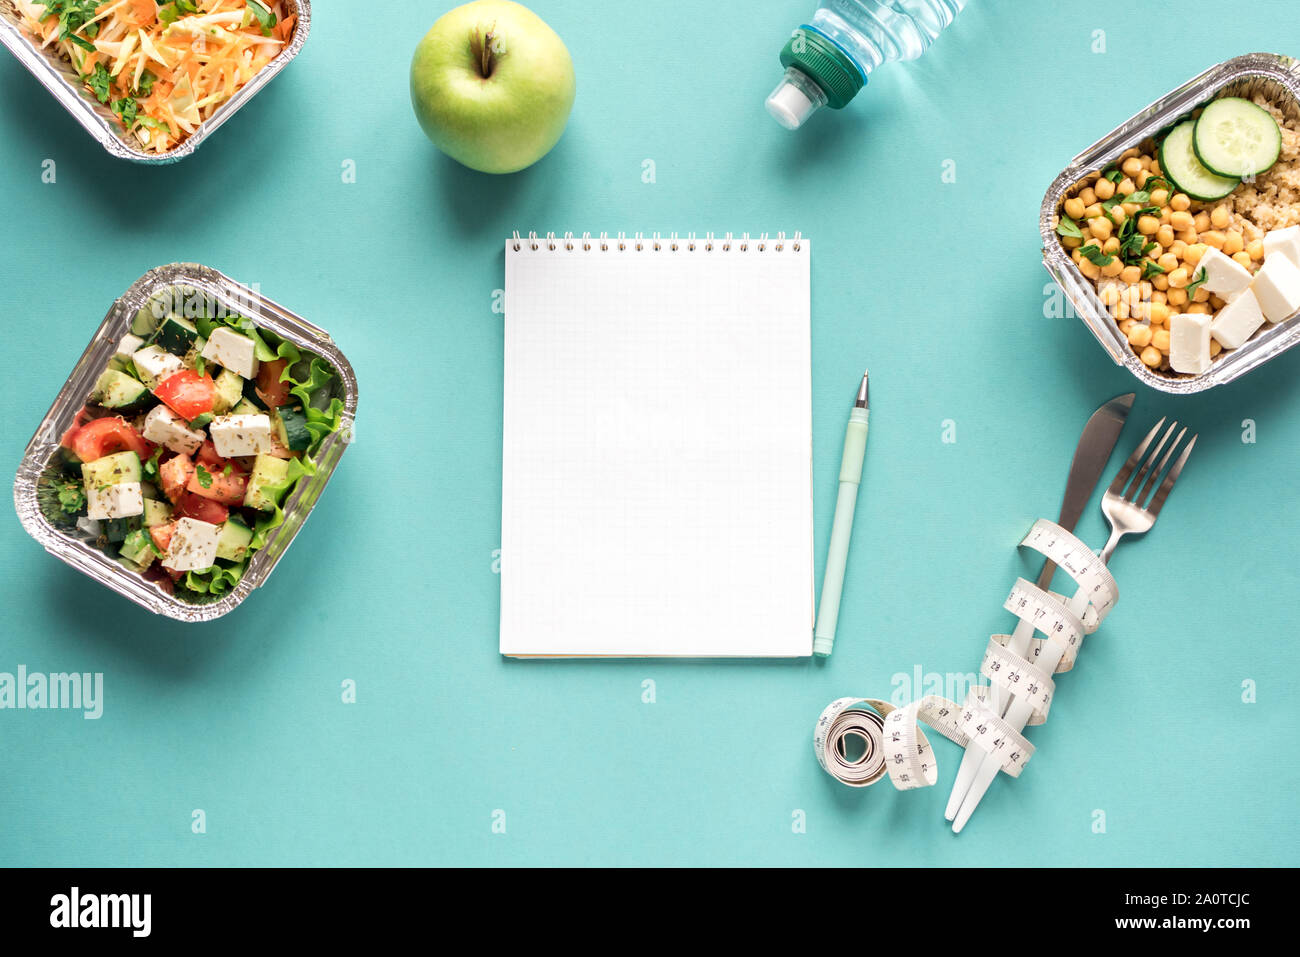 Vegetarische Diät Plan flach mit Notebook, Wasser, Obst, gesunde, vegetarische oder vegane Mahlzeiten und Maßband. Fitness Ernährung, gesunder Lebensstil Stockfoto